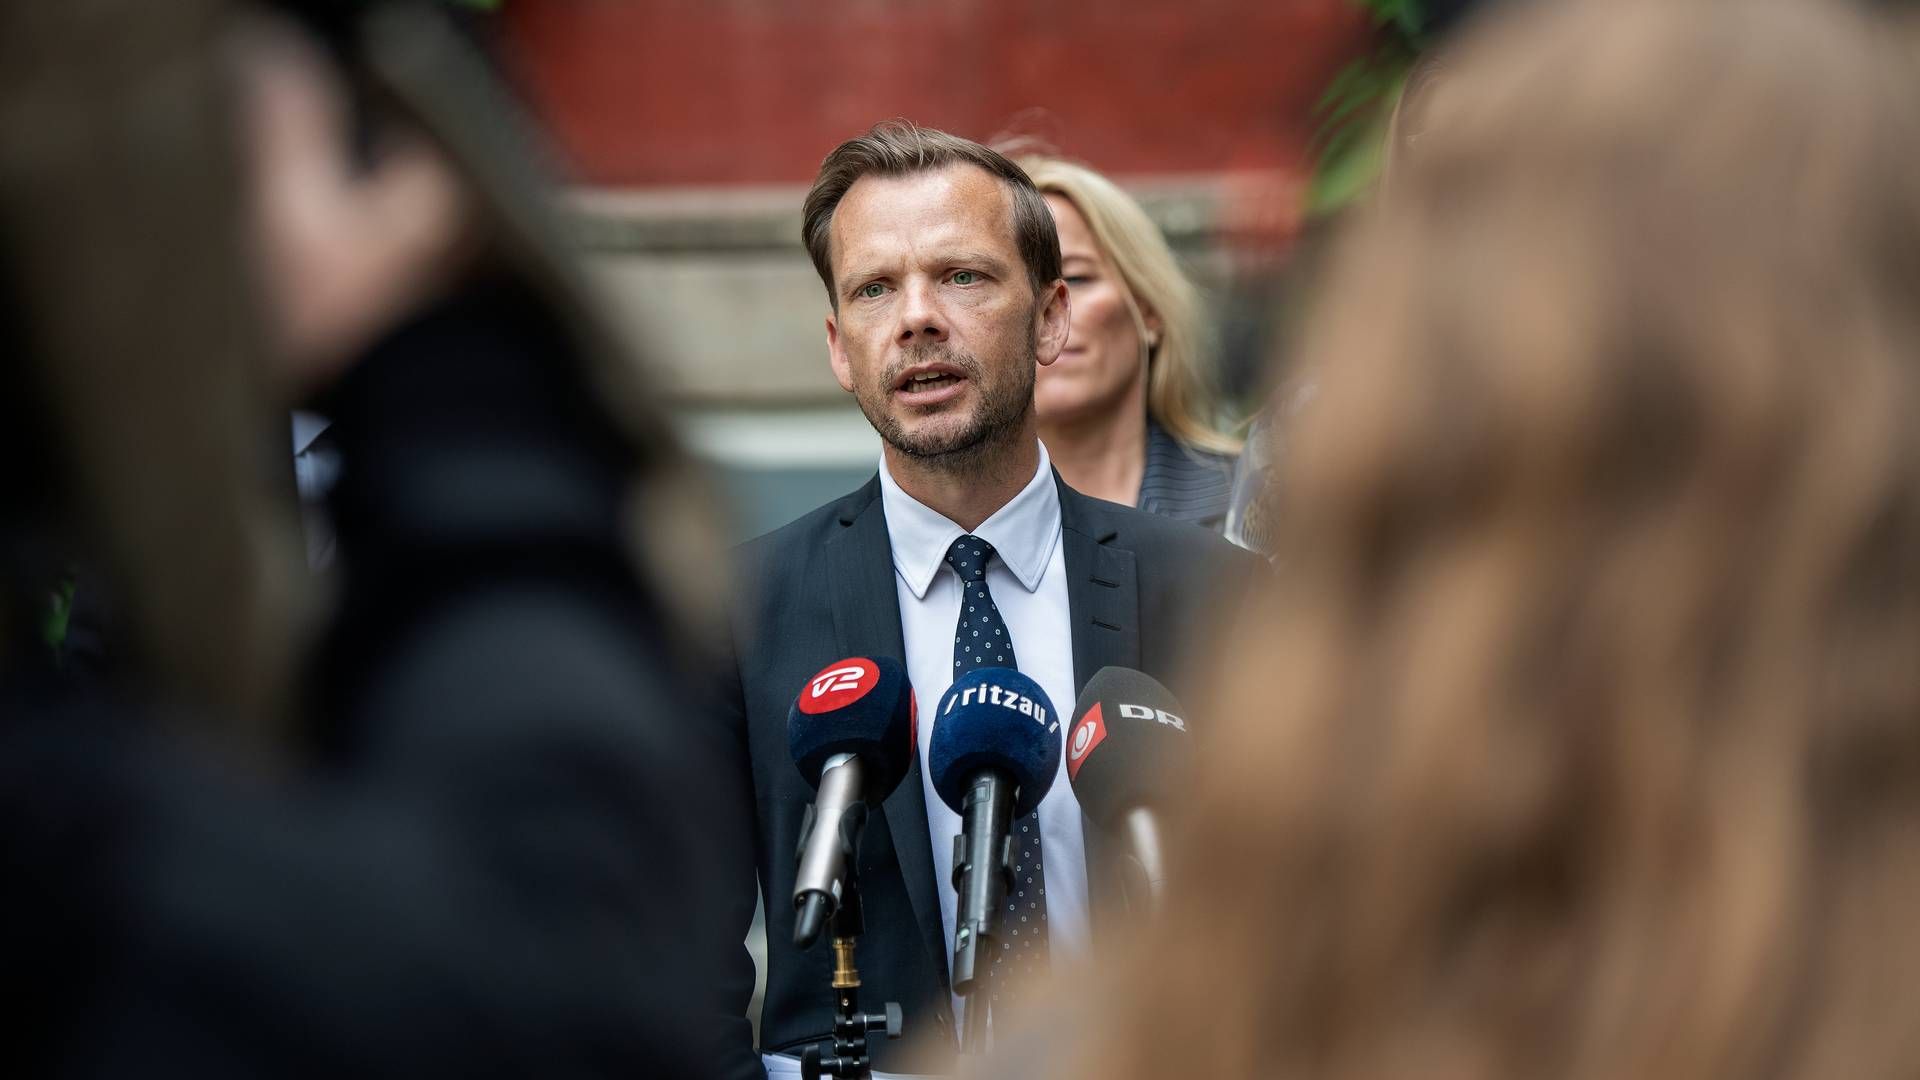 Justitsminister Peter Hummelgaard (S) har tidligere givet udtryk for, at der ville blive taget stilling til det ”videre forløb”, når arbejdet engang skulle genoptages. | Foto: Thomas Sjørup